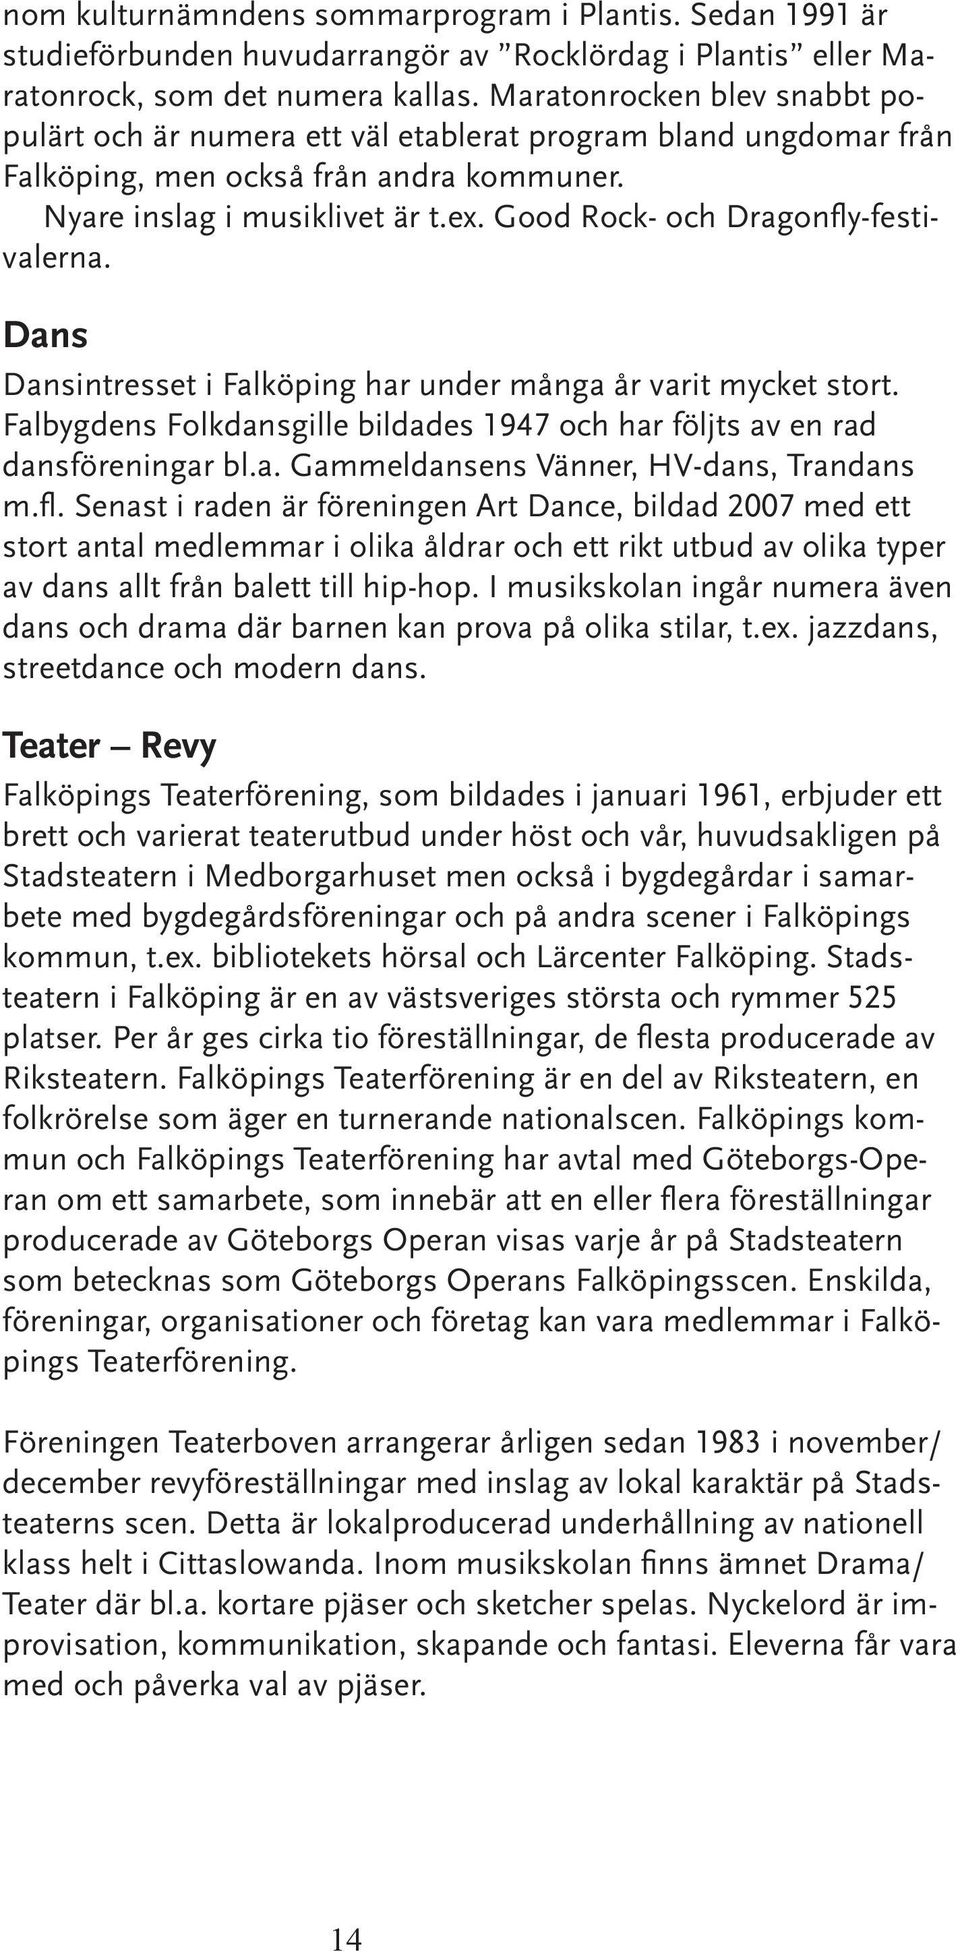 Good Rock- och Dragonfly-festivalerna. Dans Dansintresset i Falköping har under många år varit mycket stort. Falbygdens Folkdansgille bildades 1947 och har följts av en rad dansföreningar bl.a. Gammeldansens Vänner, HV-dans, Trandans m.